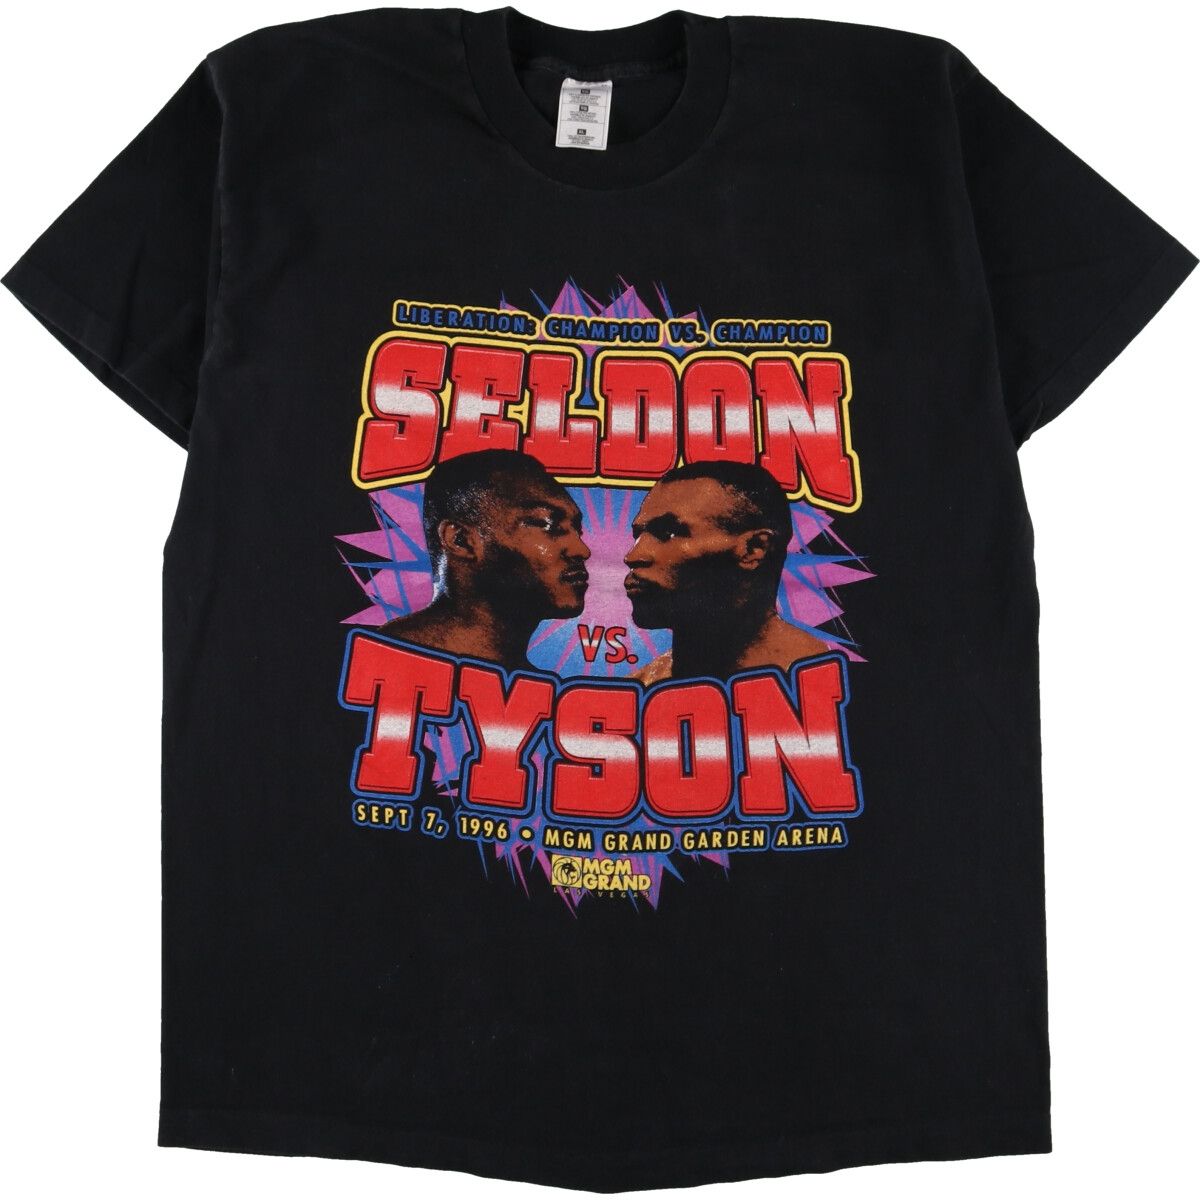 激レア タイソン VS セルドン 1996年 タイトルマッチ Tシャツ(白)DONKINGP